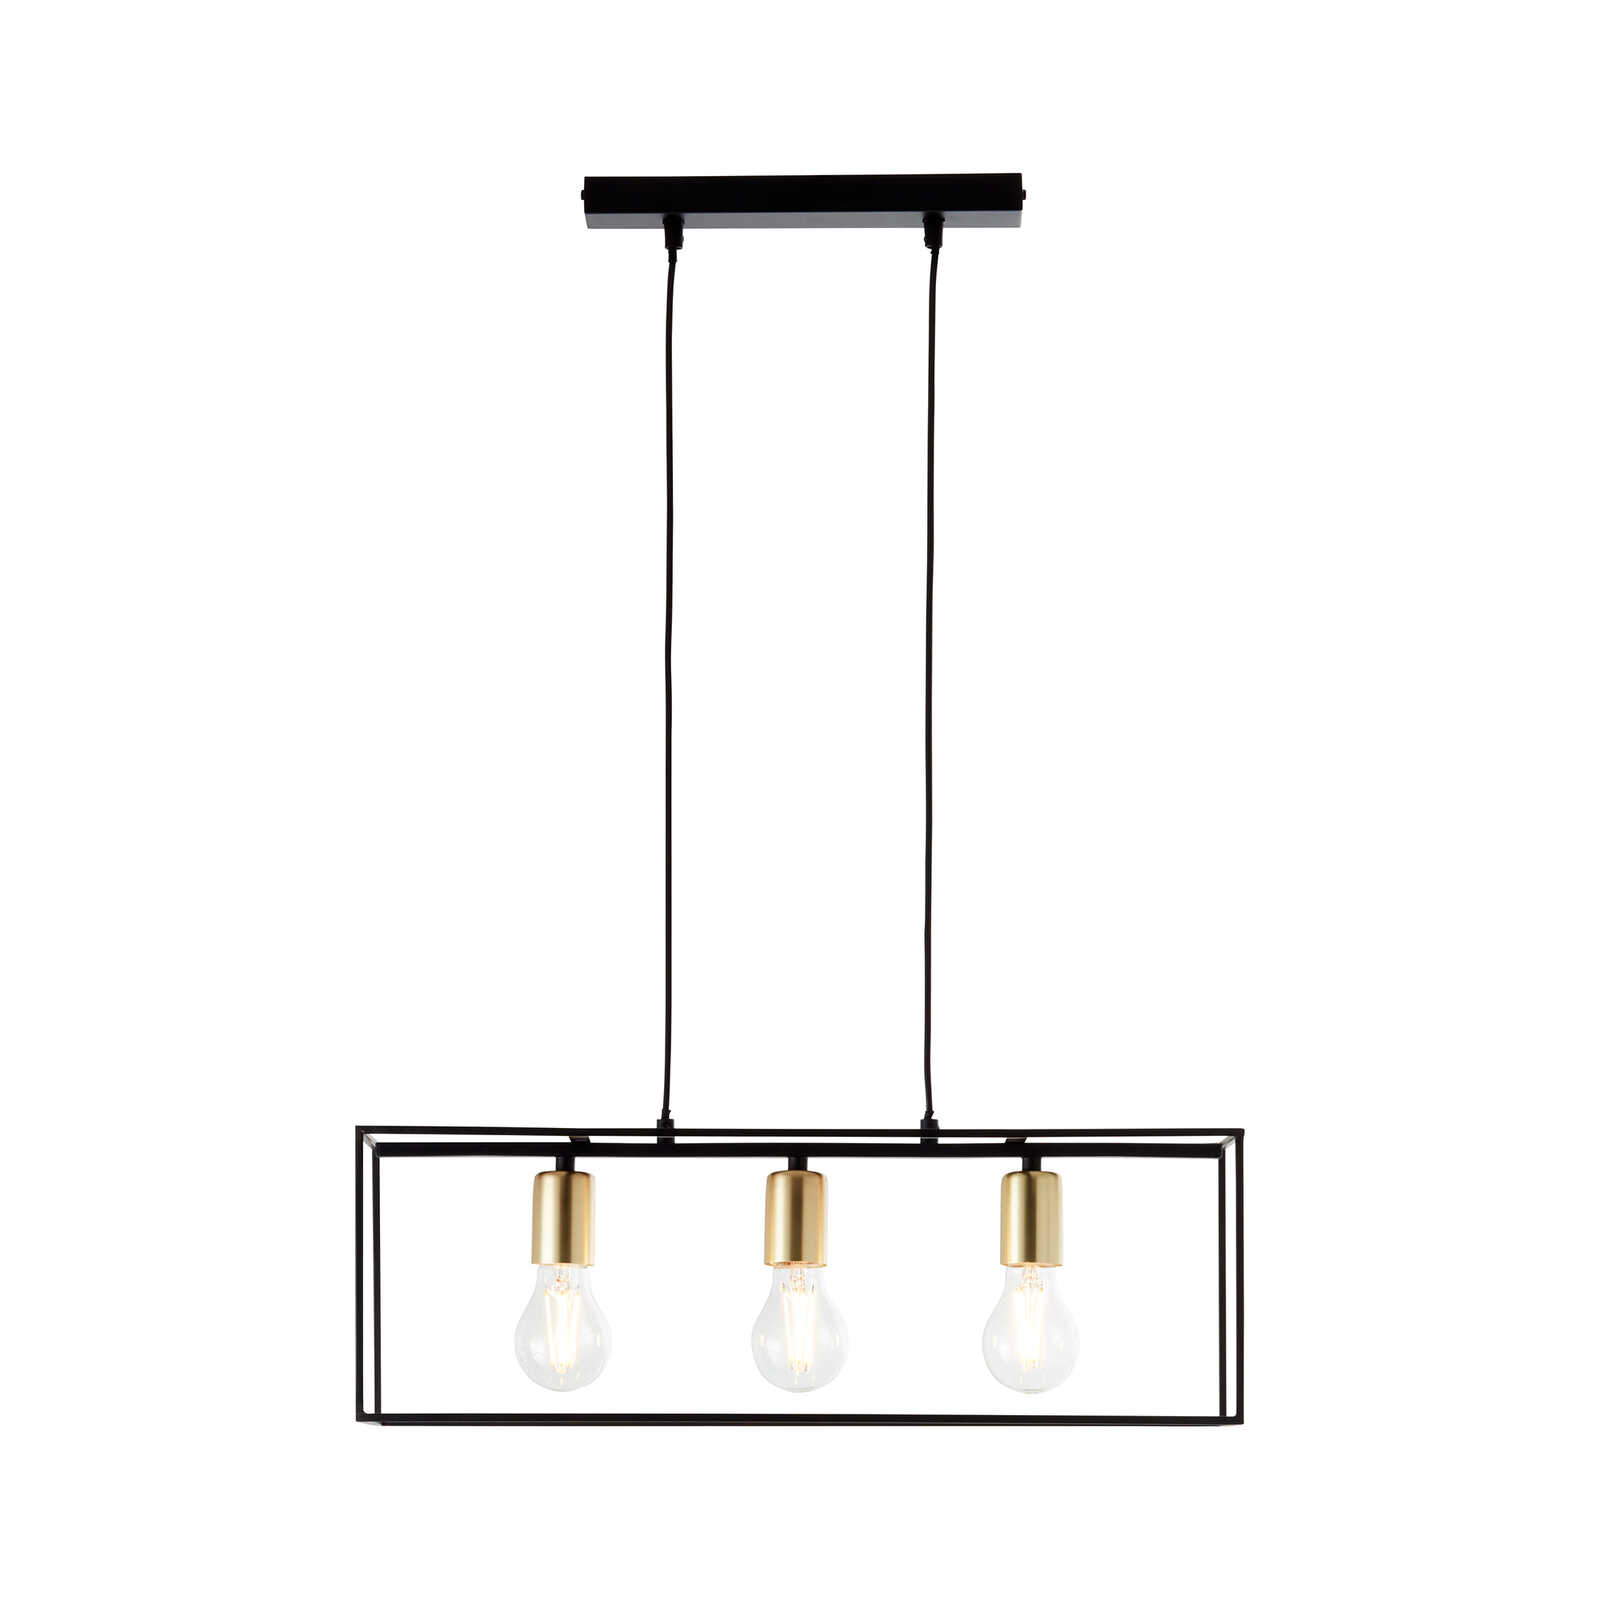             Metalen hanglamp - Amber 1 - Goud
        